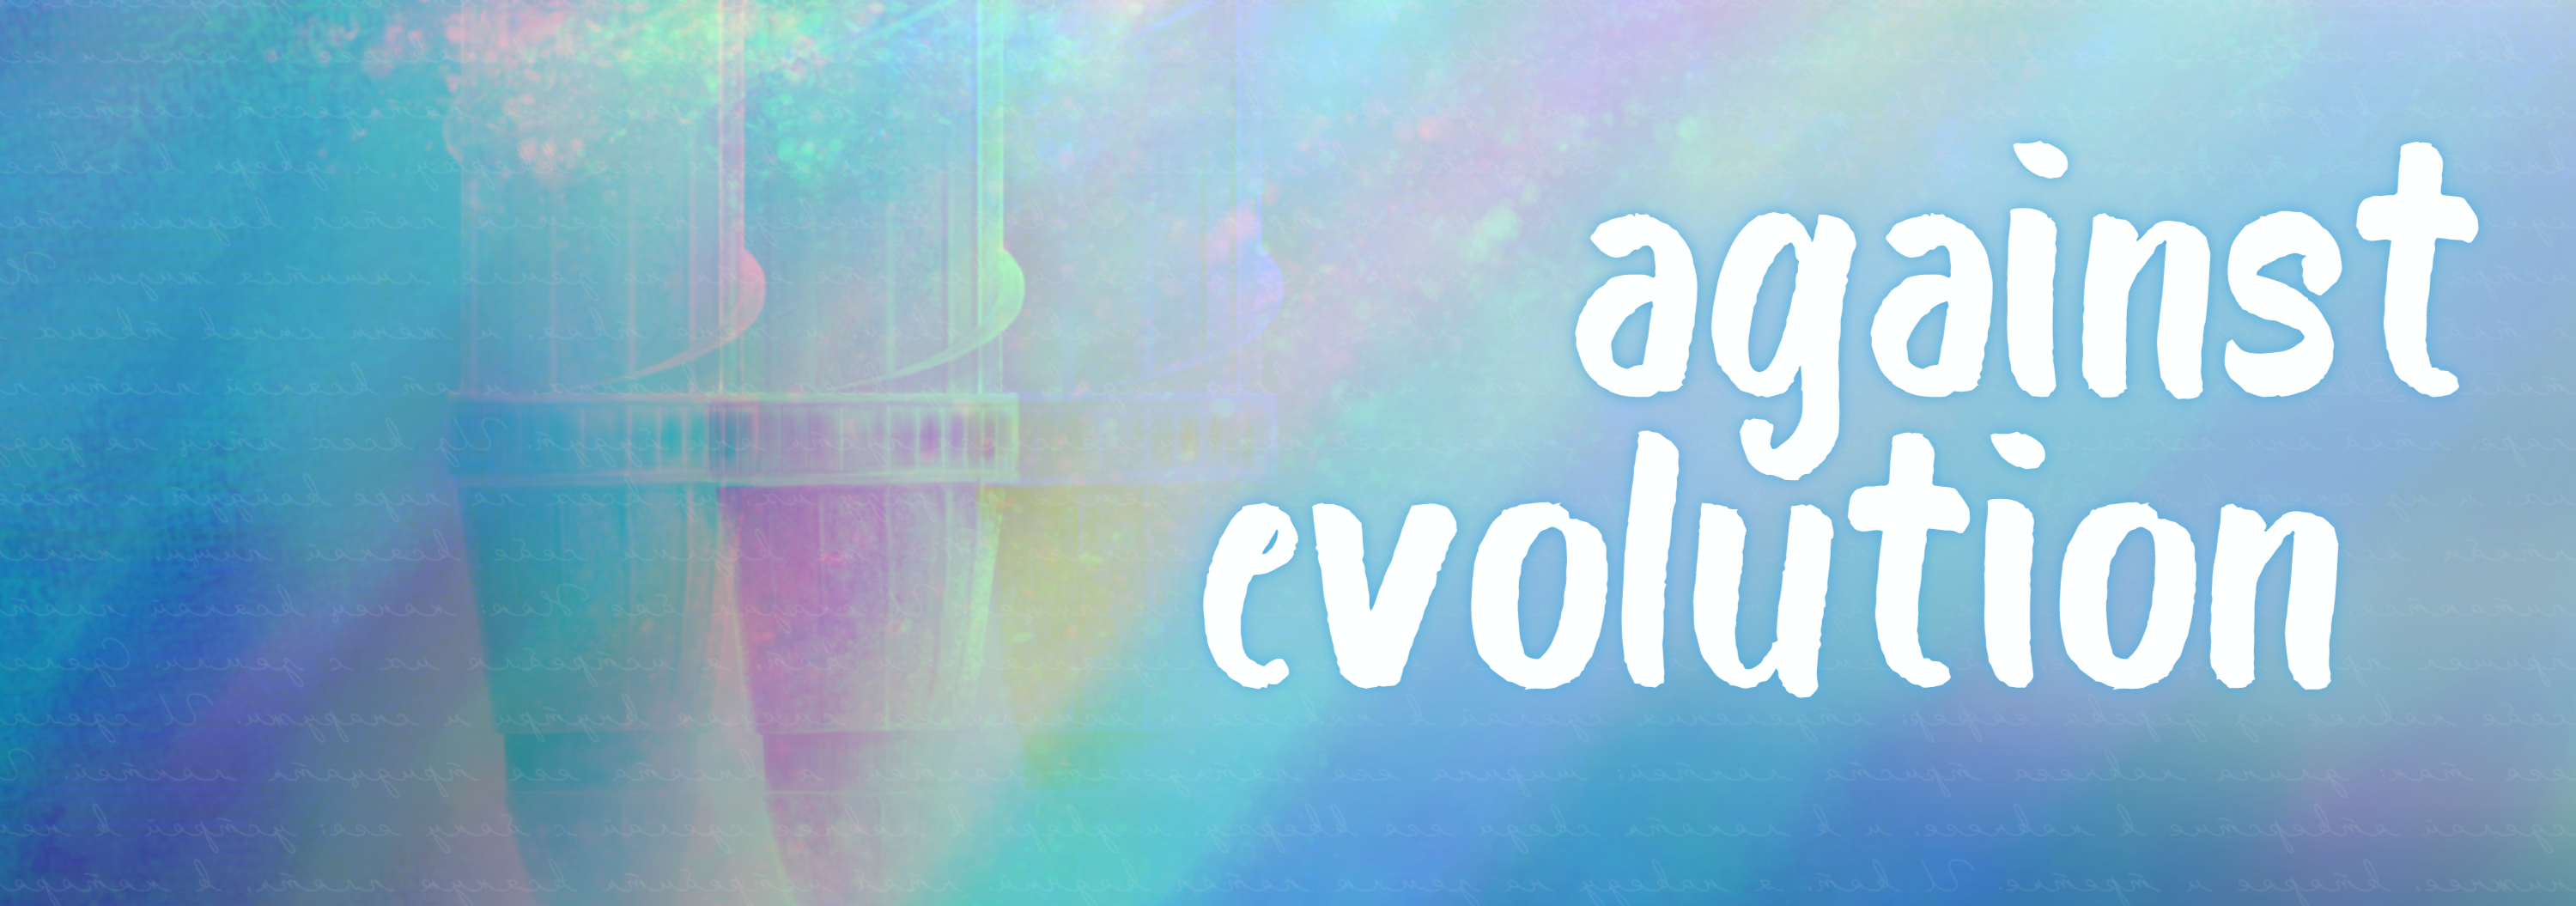 Against evolution